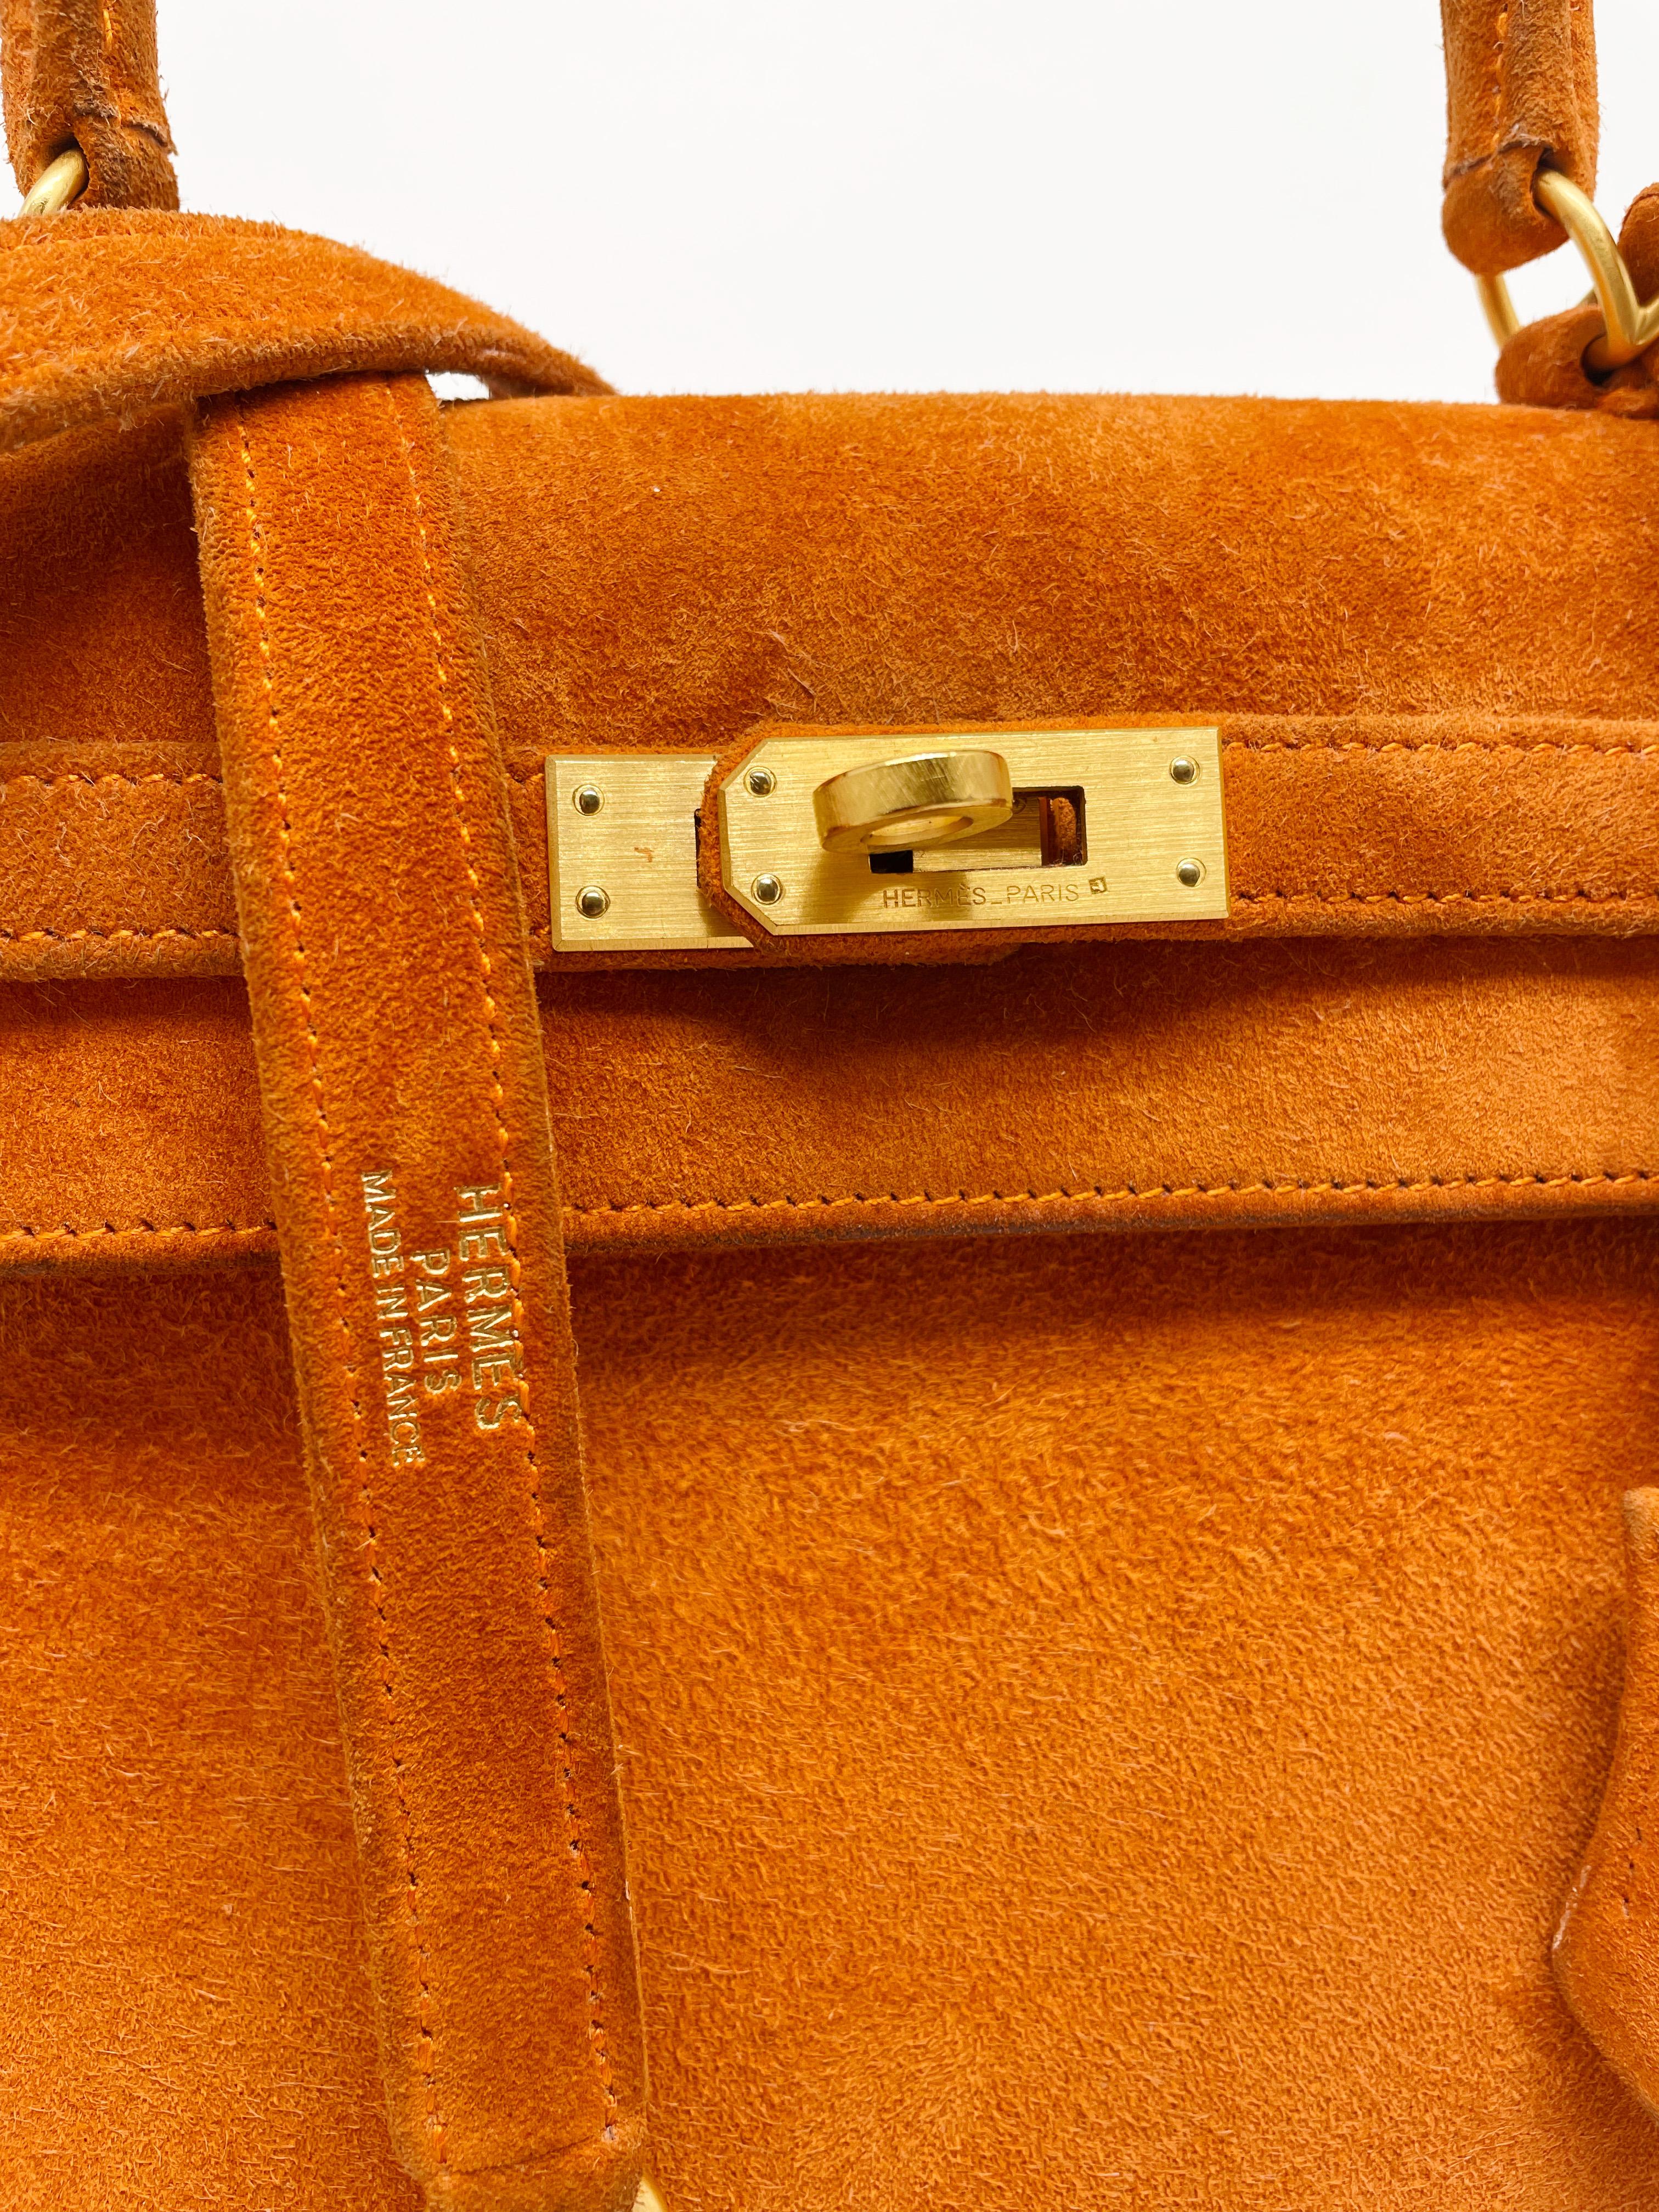 Außergewöhnliche Hermes Kelly 25 cm Handtasche in Doblis Kalbsleder und raffinierte gebürstetem Gold Hardware, einfache Griff in orange Wildleder, eine einfache abnehmbare Griff in orange Wildleder ermöglicht es, in der Hand oder auf der Schulter